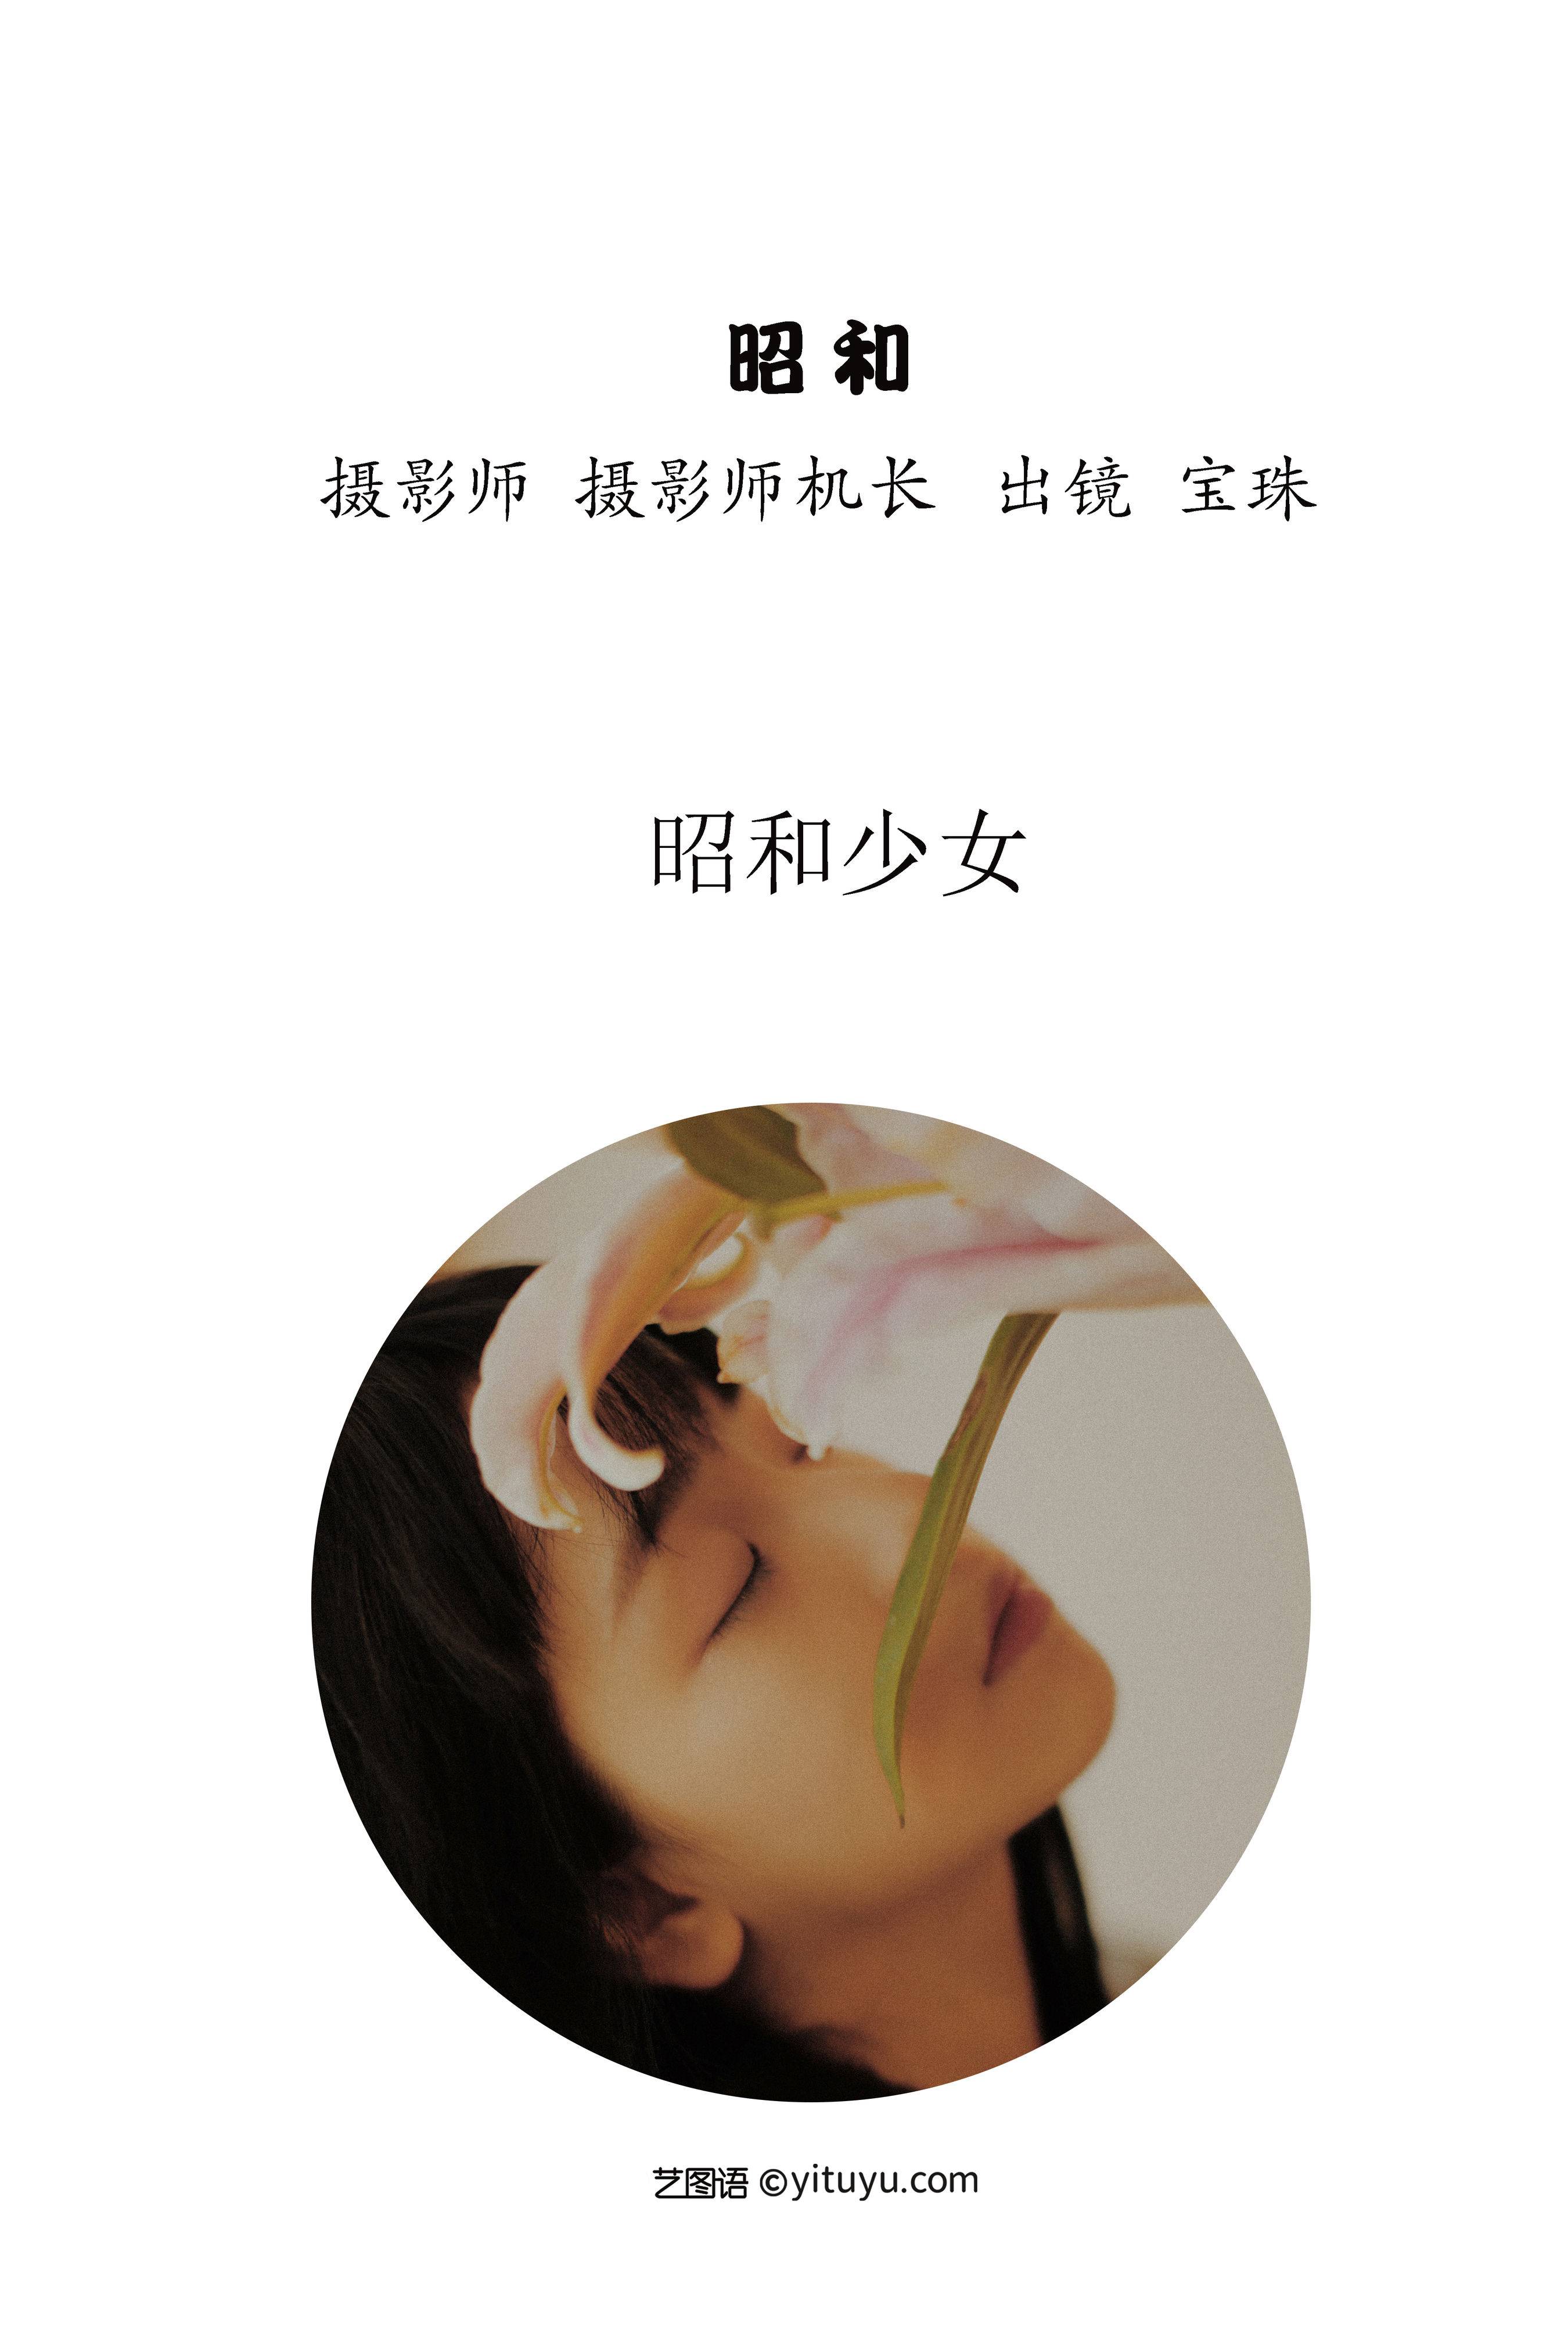 昭和 唯美 好看个性 治愈系 优美 日式和风 日系 少女&YiTuYu艺图语-2